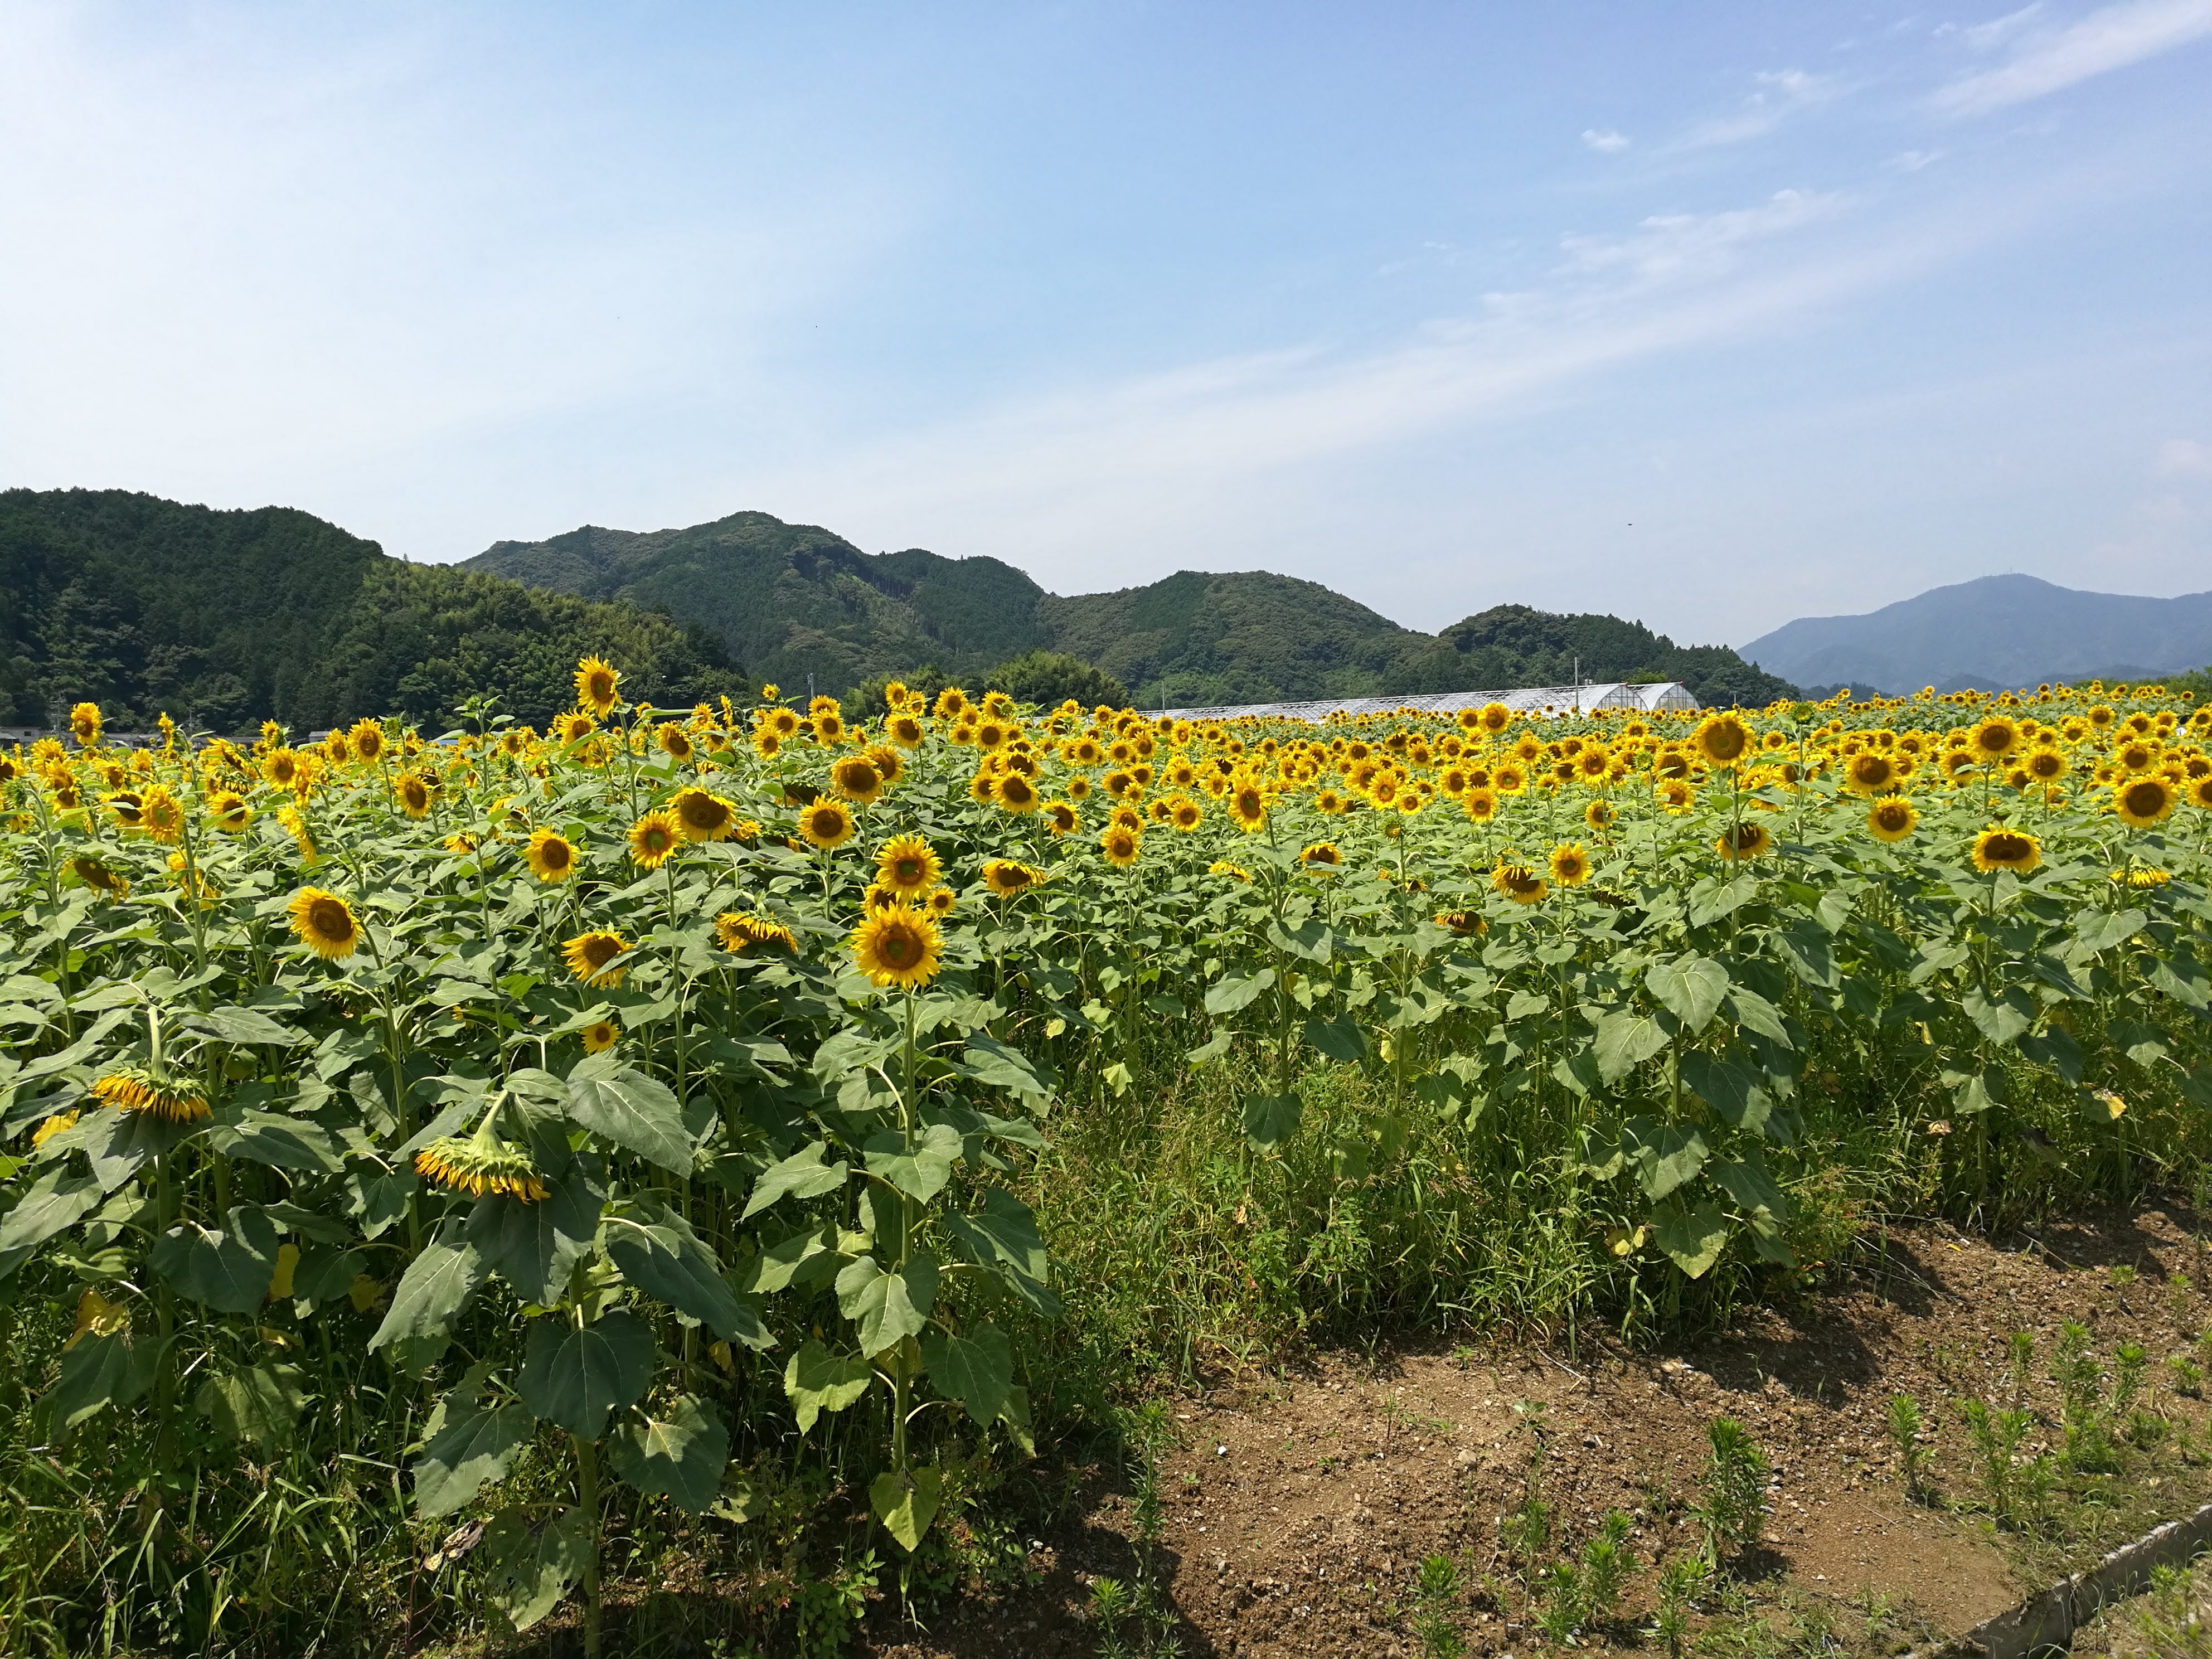 出間のひまわり畑 蓮池公園 初夏の絶景さわやかサイクリング 高知県土佐市 高知に移住したのーてんき女のブログ